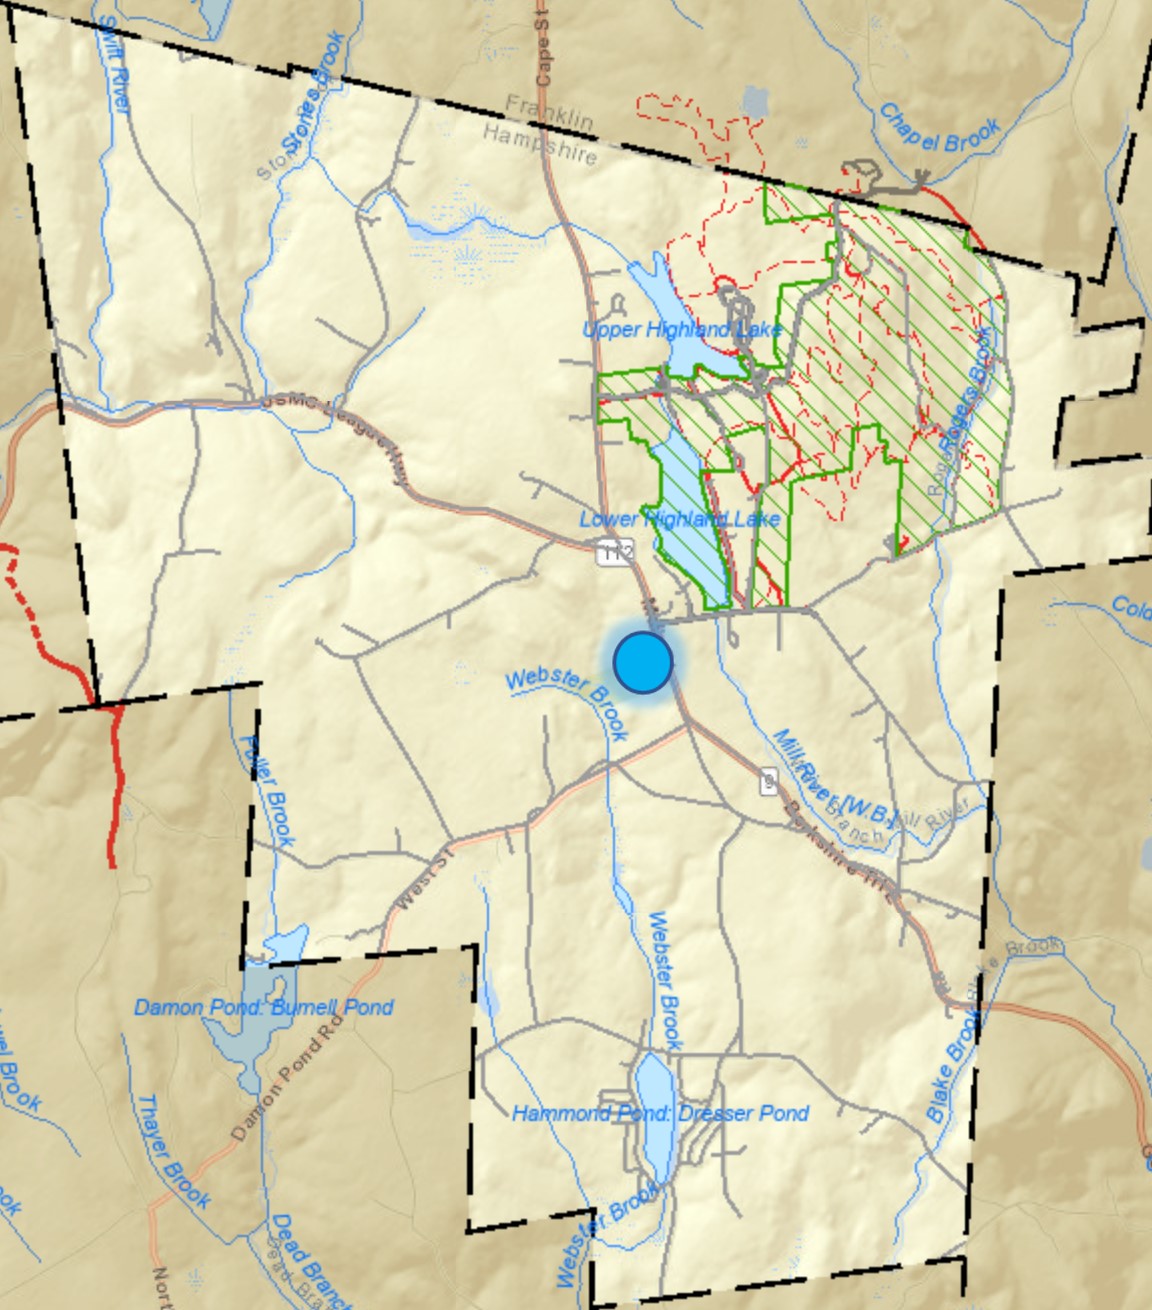 town center dot map of Goshen